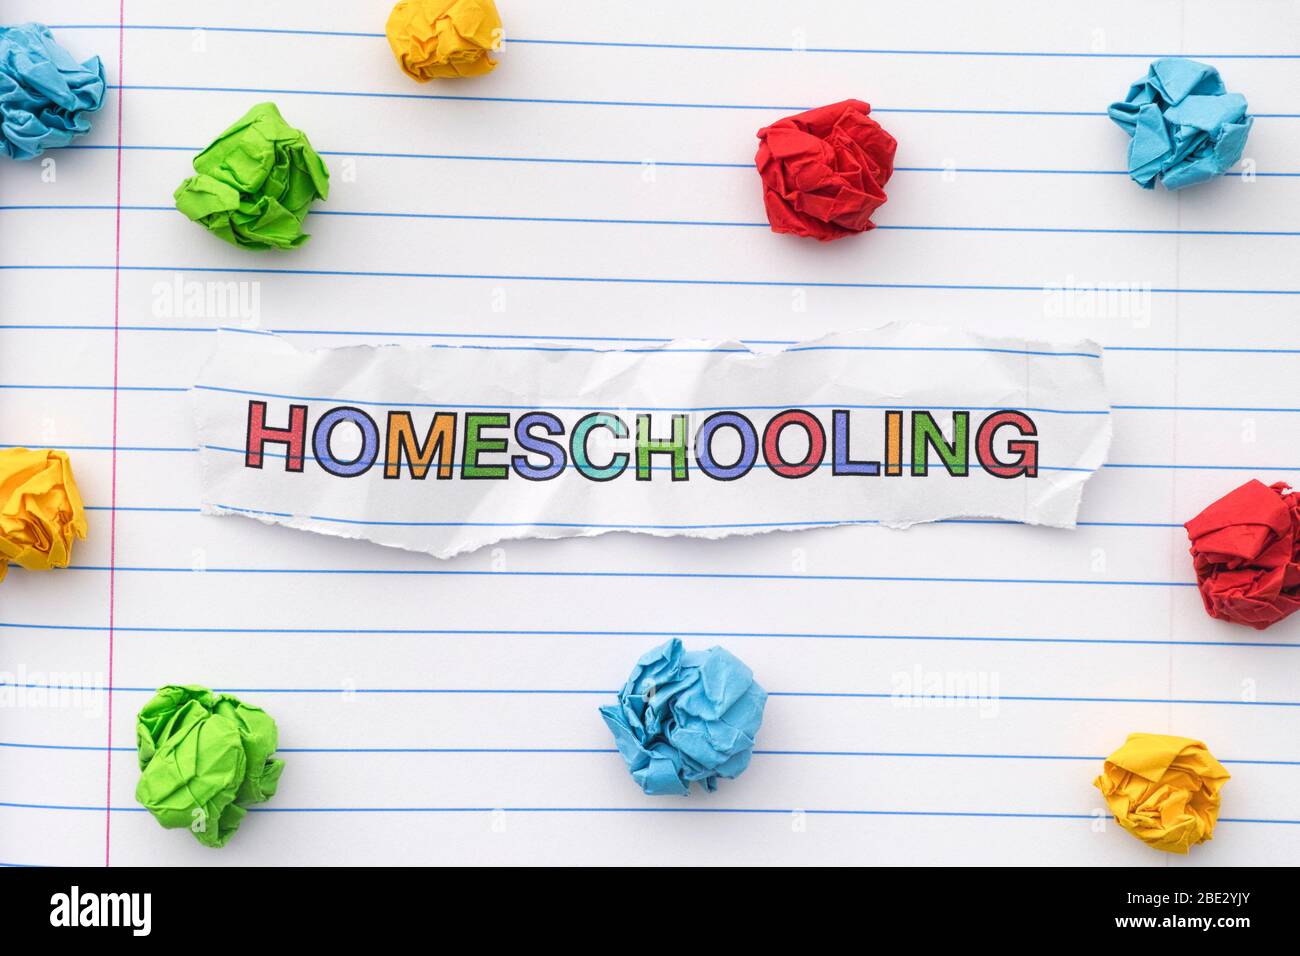 La parola Homeschooling scritto su un foglio di notebook con alcune palle di carta stropicciati intorno ad esso. Primo piano. Foto Stock